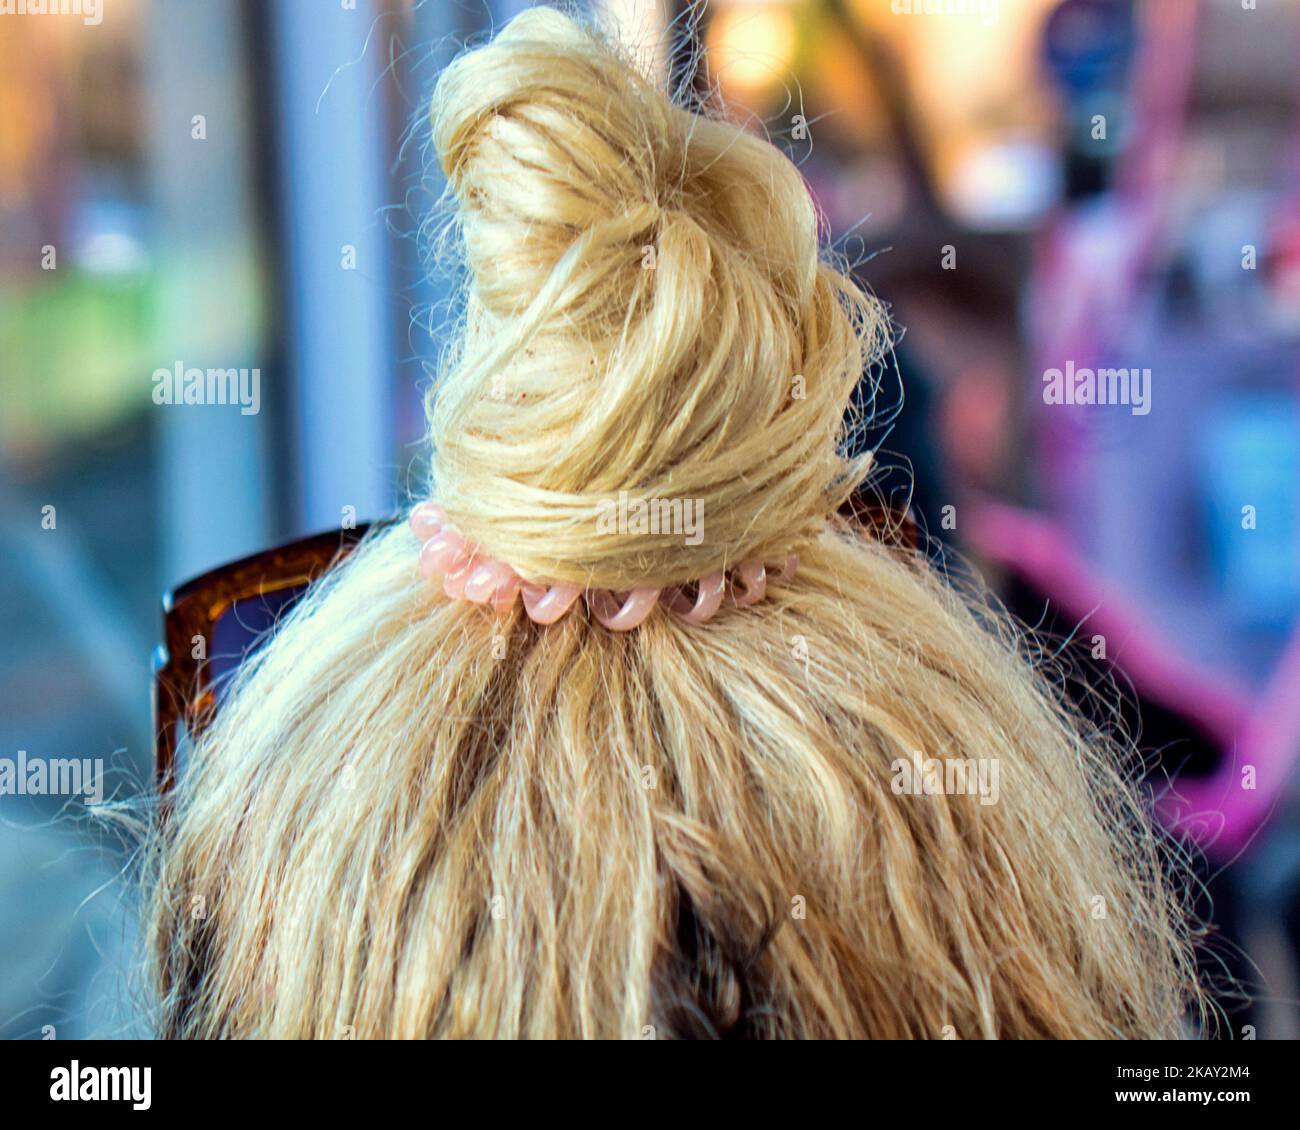 cheveux blonds attachés sur un petit pain sur la tête Banque D'Images